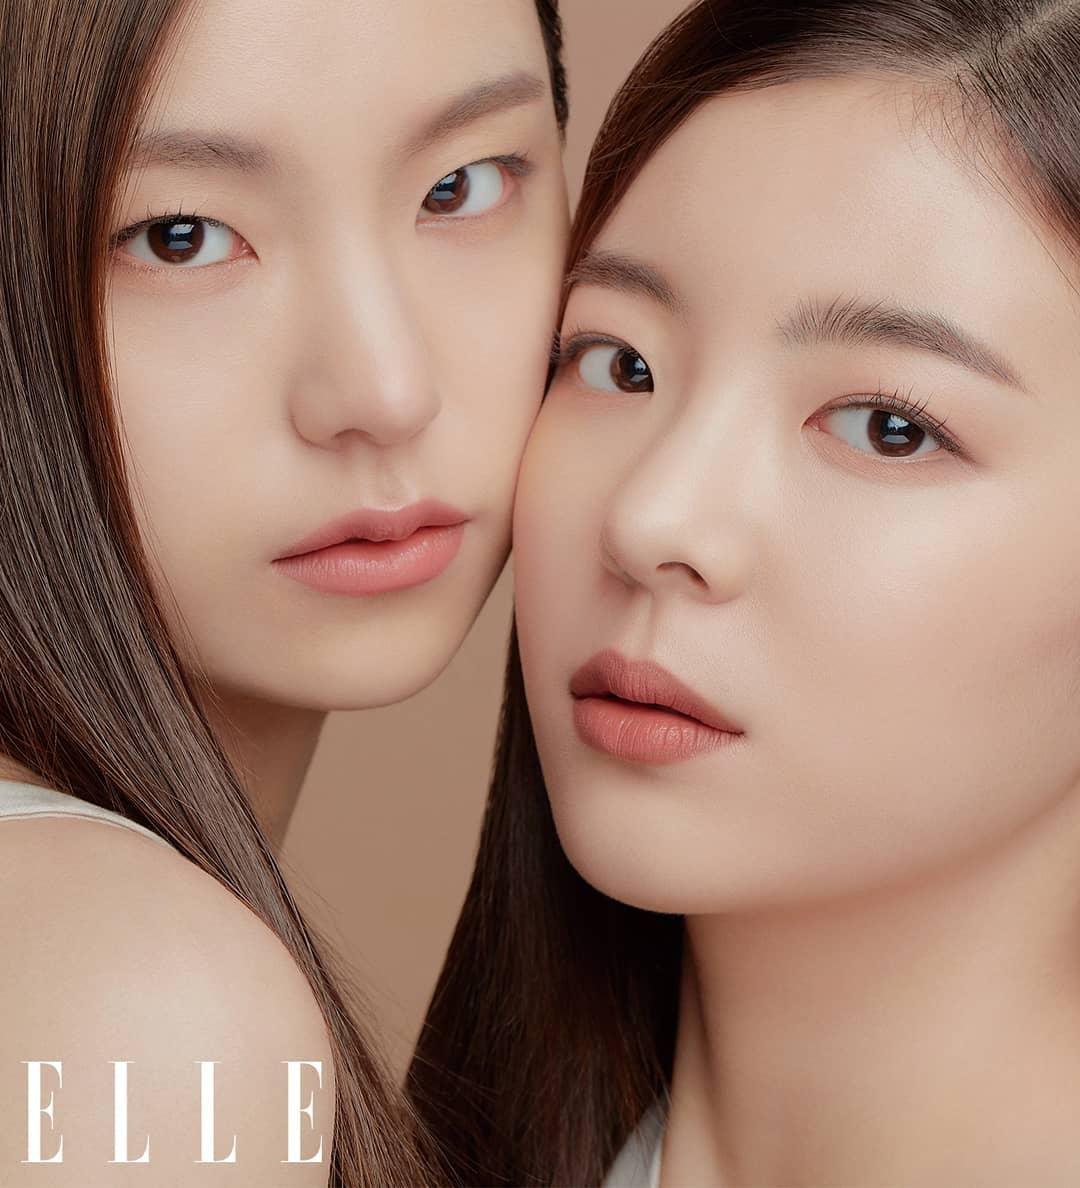 ITZY продемонстрировали естественный макияж в фотосессии для Elle